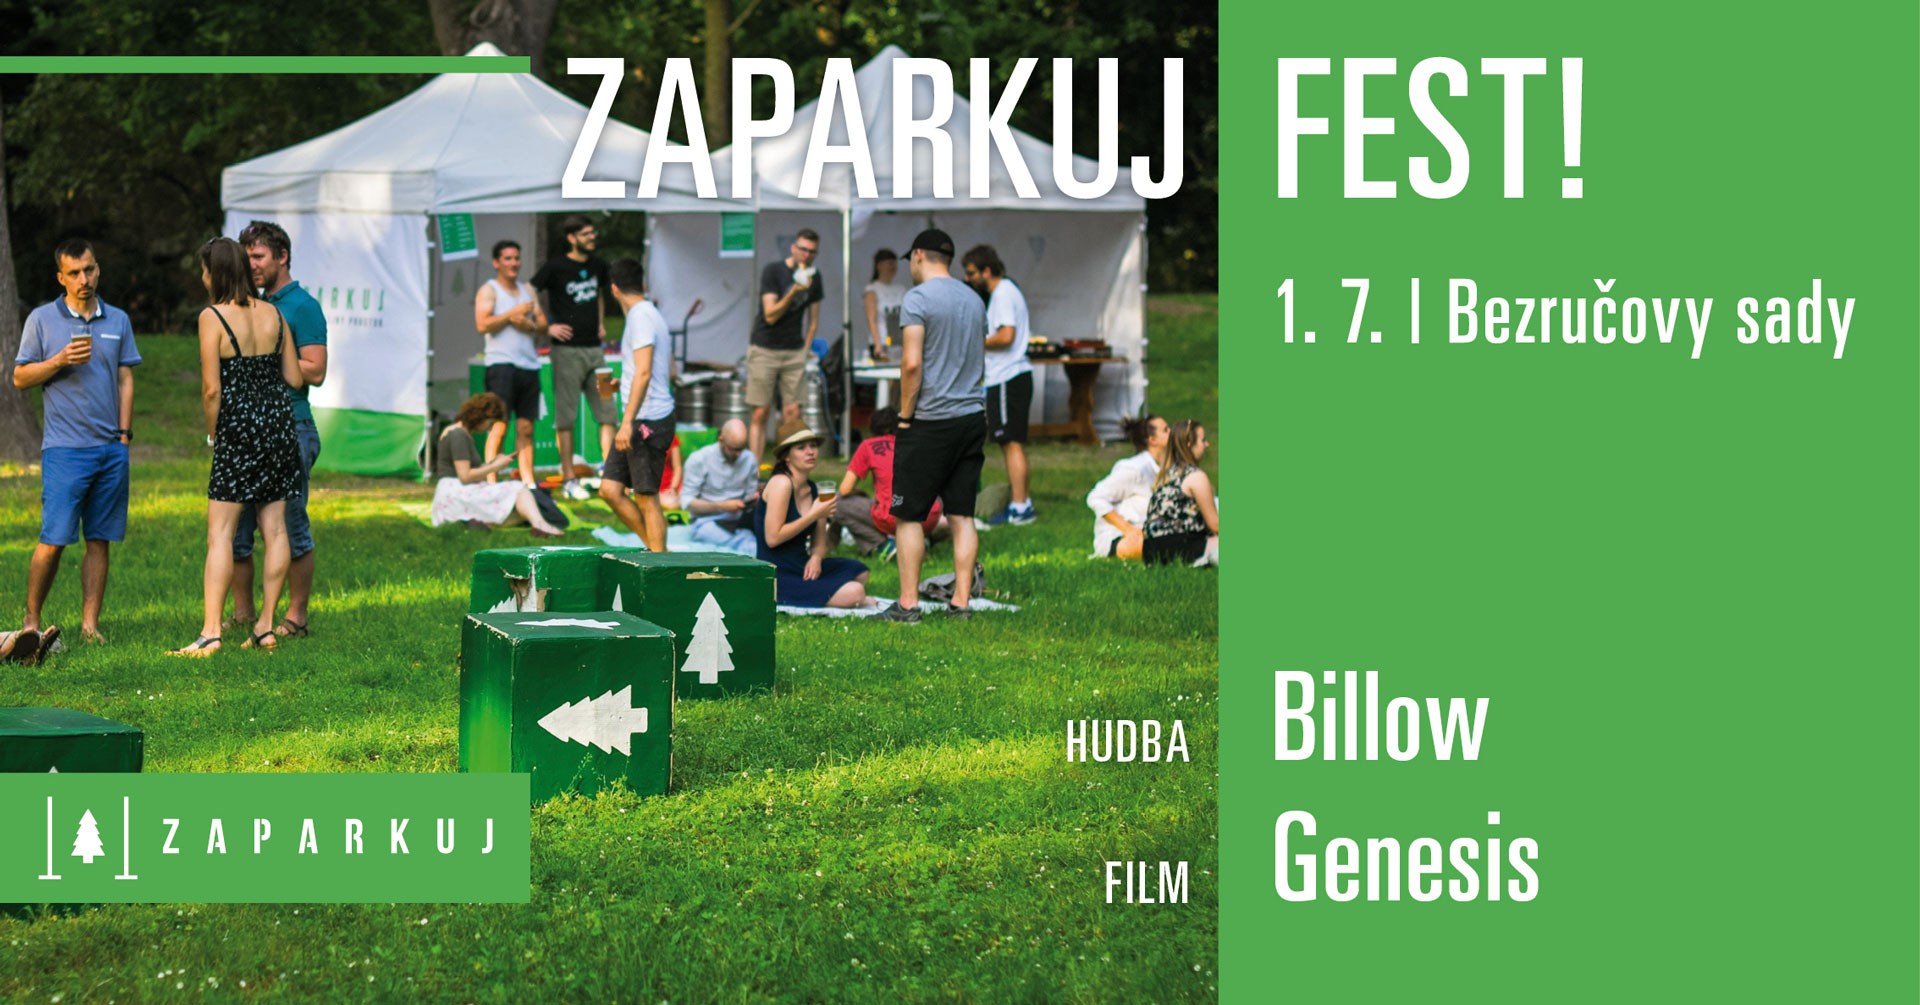 1. 7. ZAPARKUJ FEST! | BILLOW / GENESIS